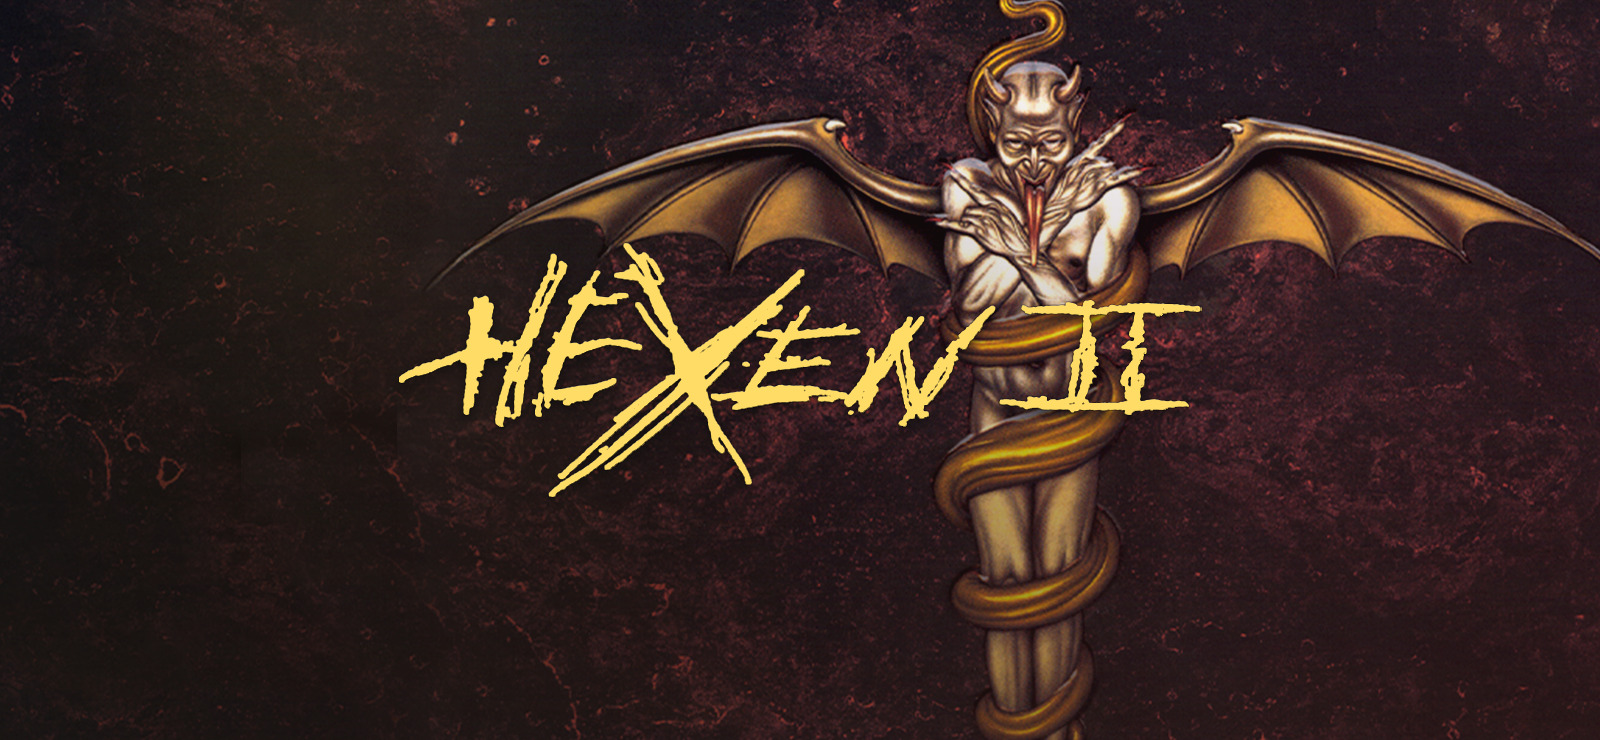 Hexen 2 mission pack portal of praevus фото 9